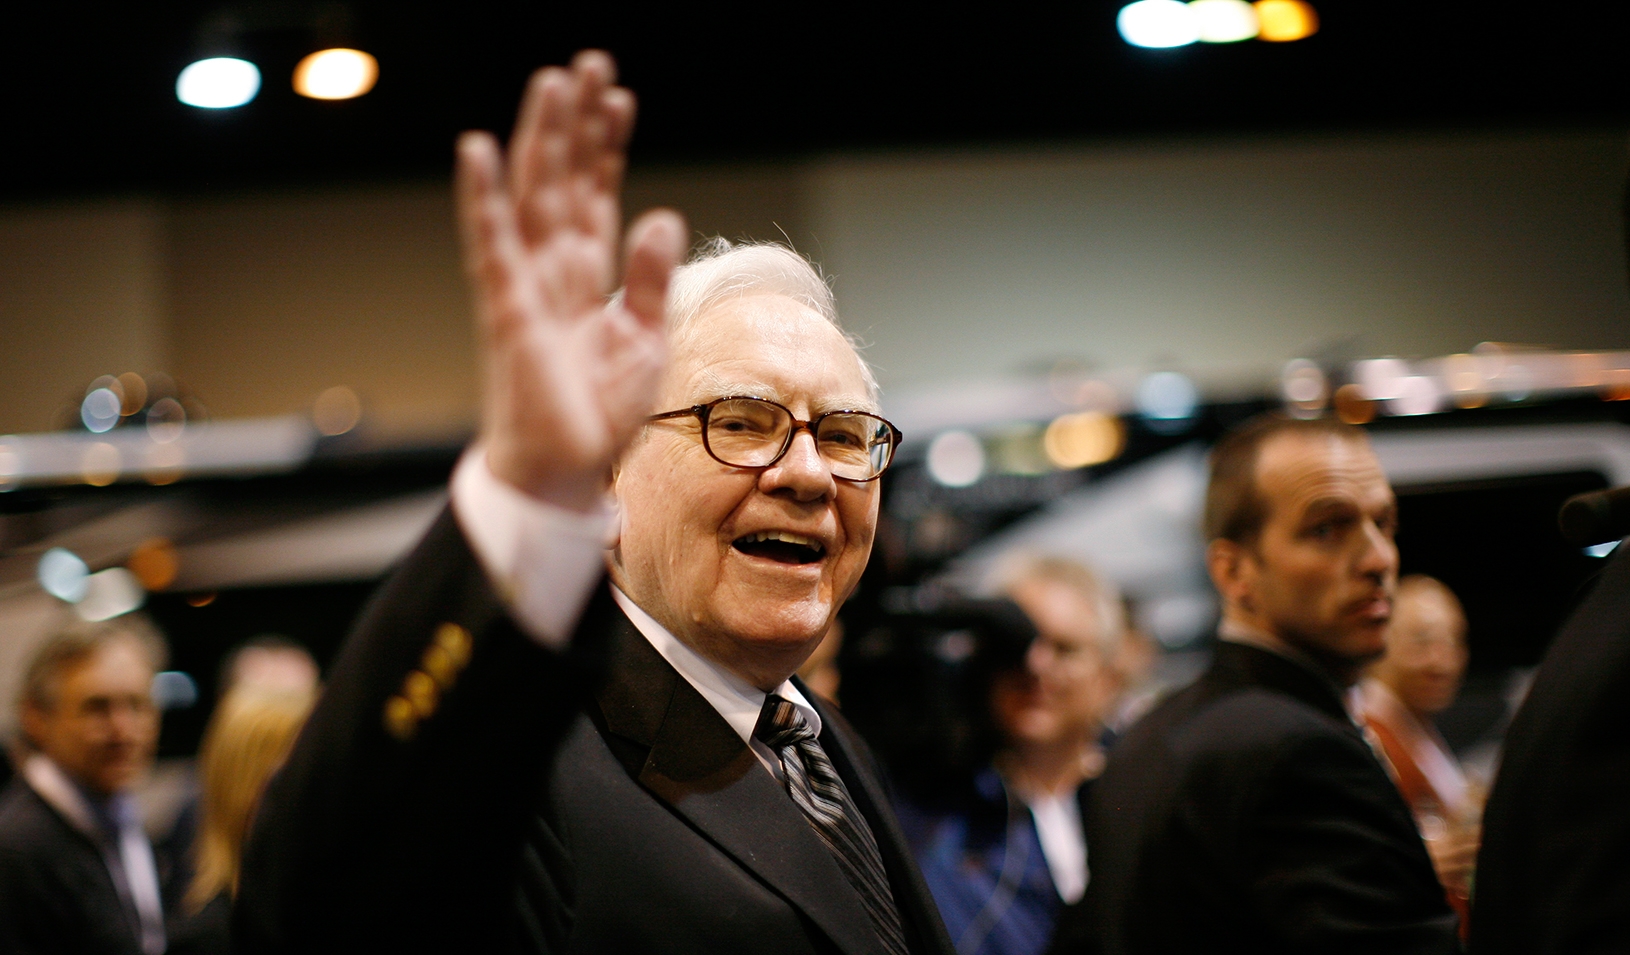 Forbesin üçüncü varlısı, əsl investor Warren Buffet dövrü sonamı çatır?